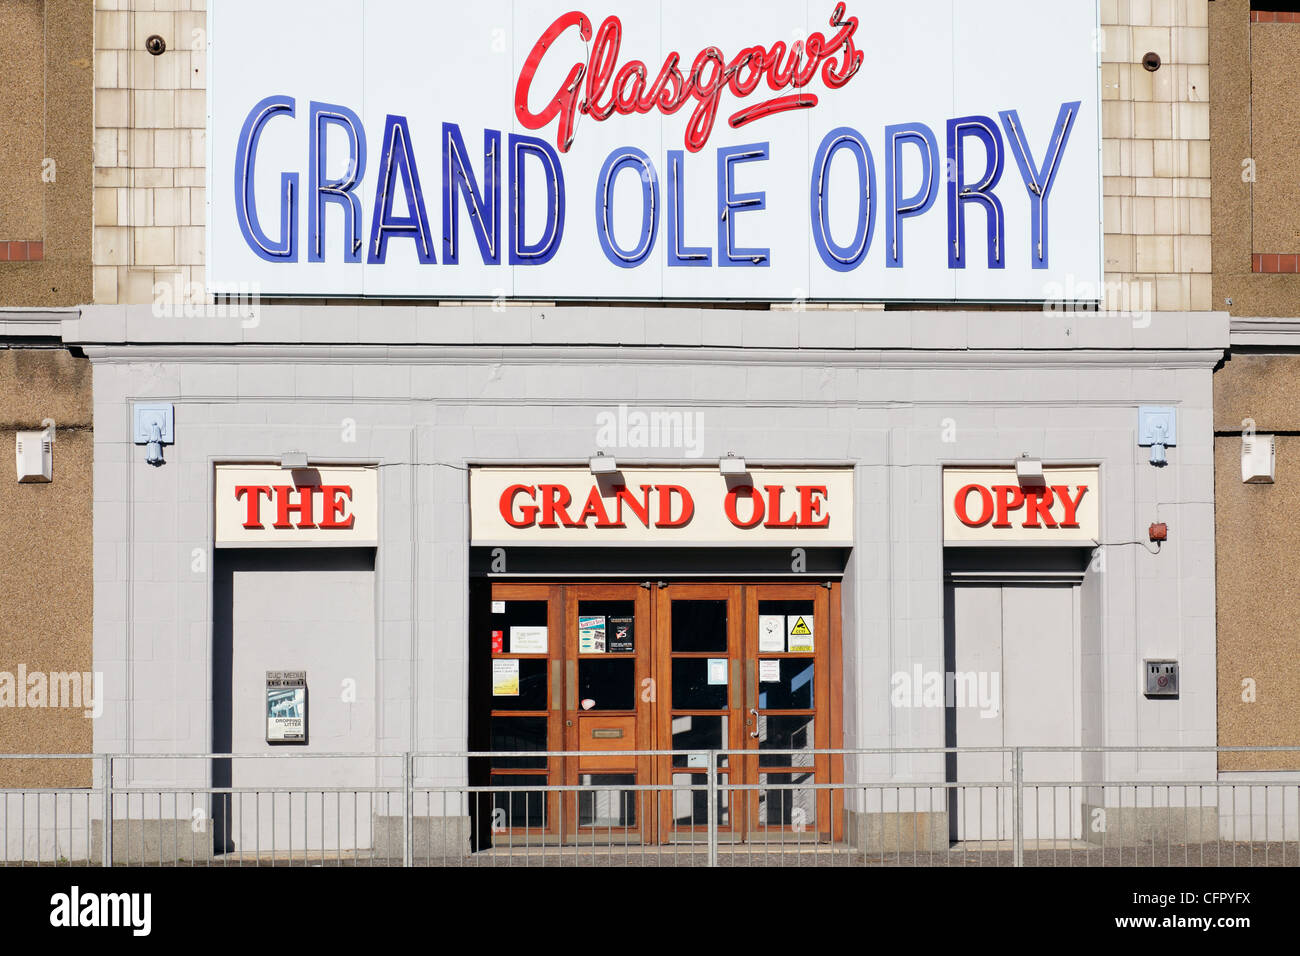 Entrée au Grand Ole Opry un lieu traditionnel de musique country et occidentale, Govan Road, Glasgow, Écosse, Royaume-Uni Banque D'Images